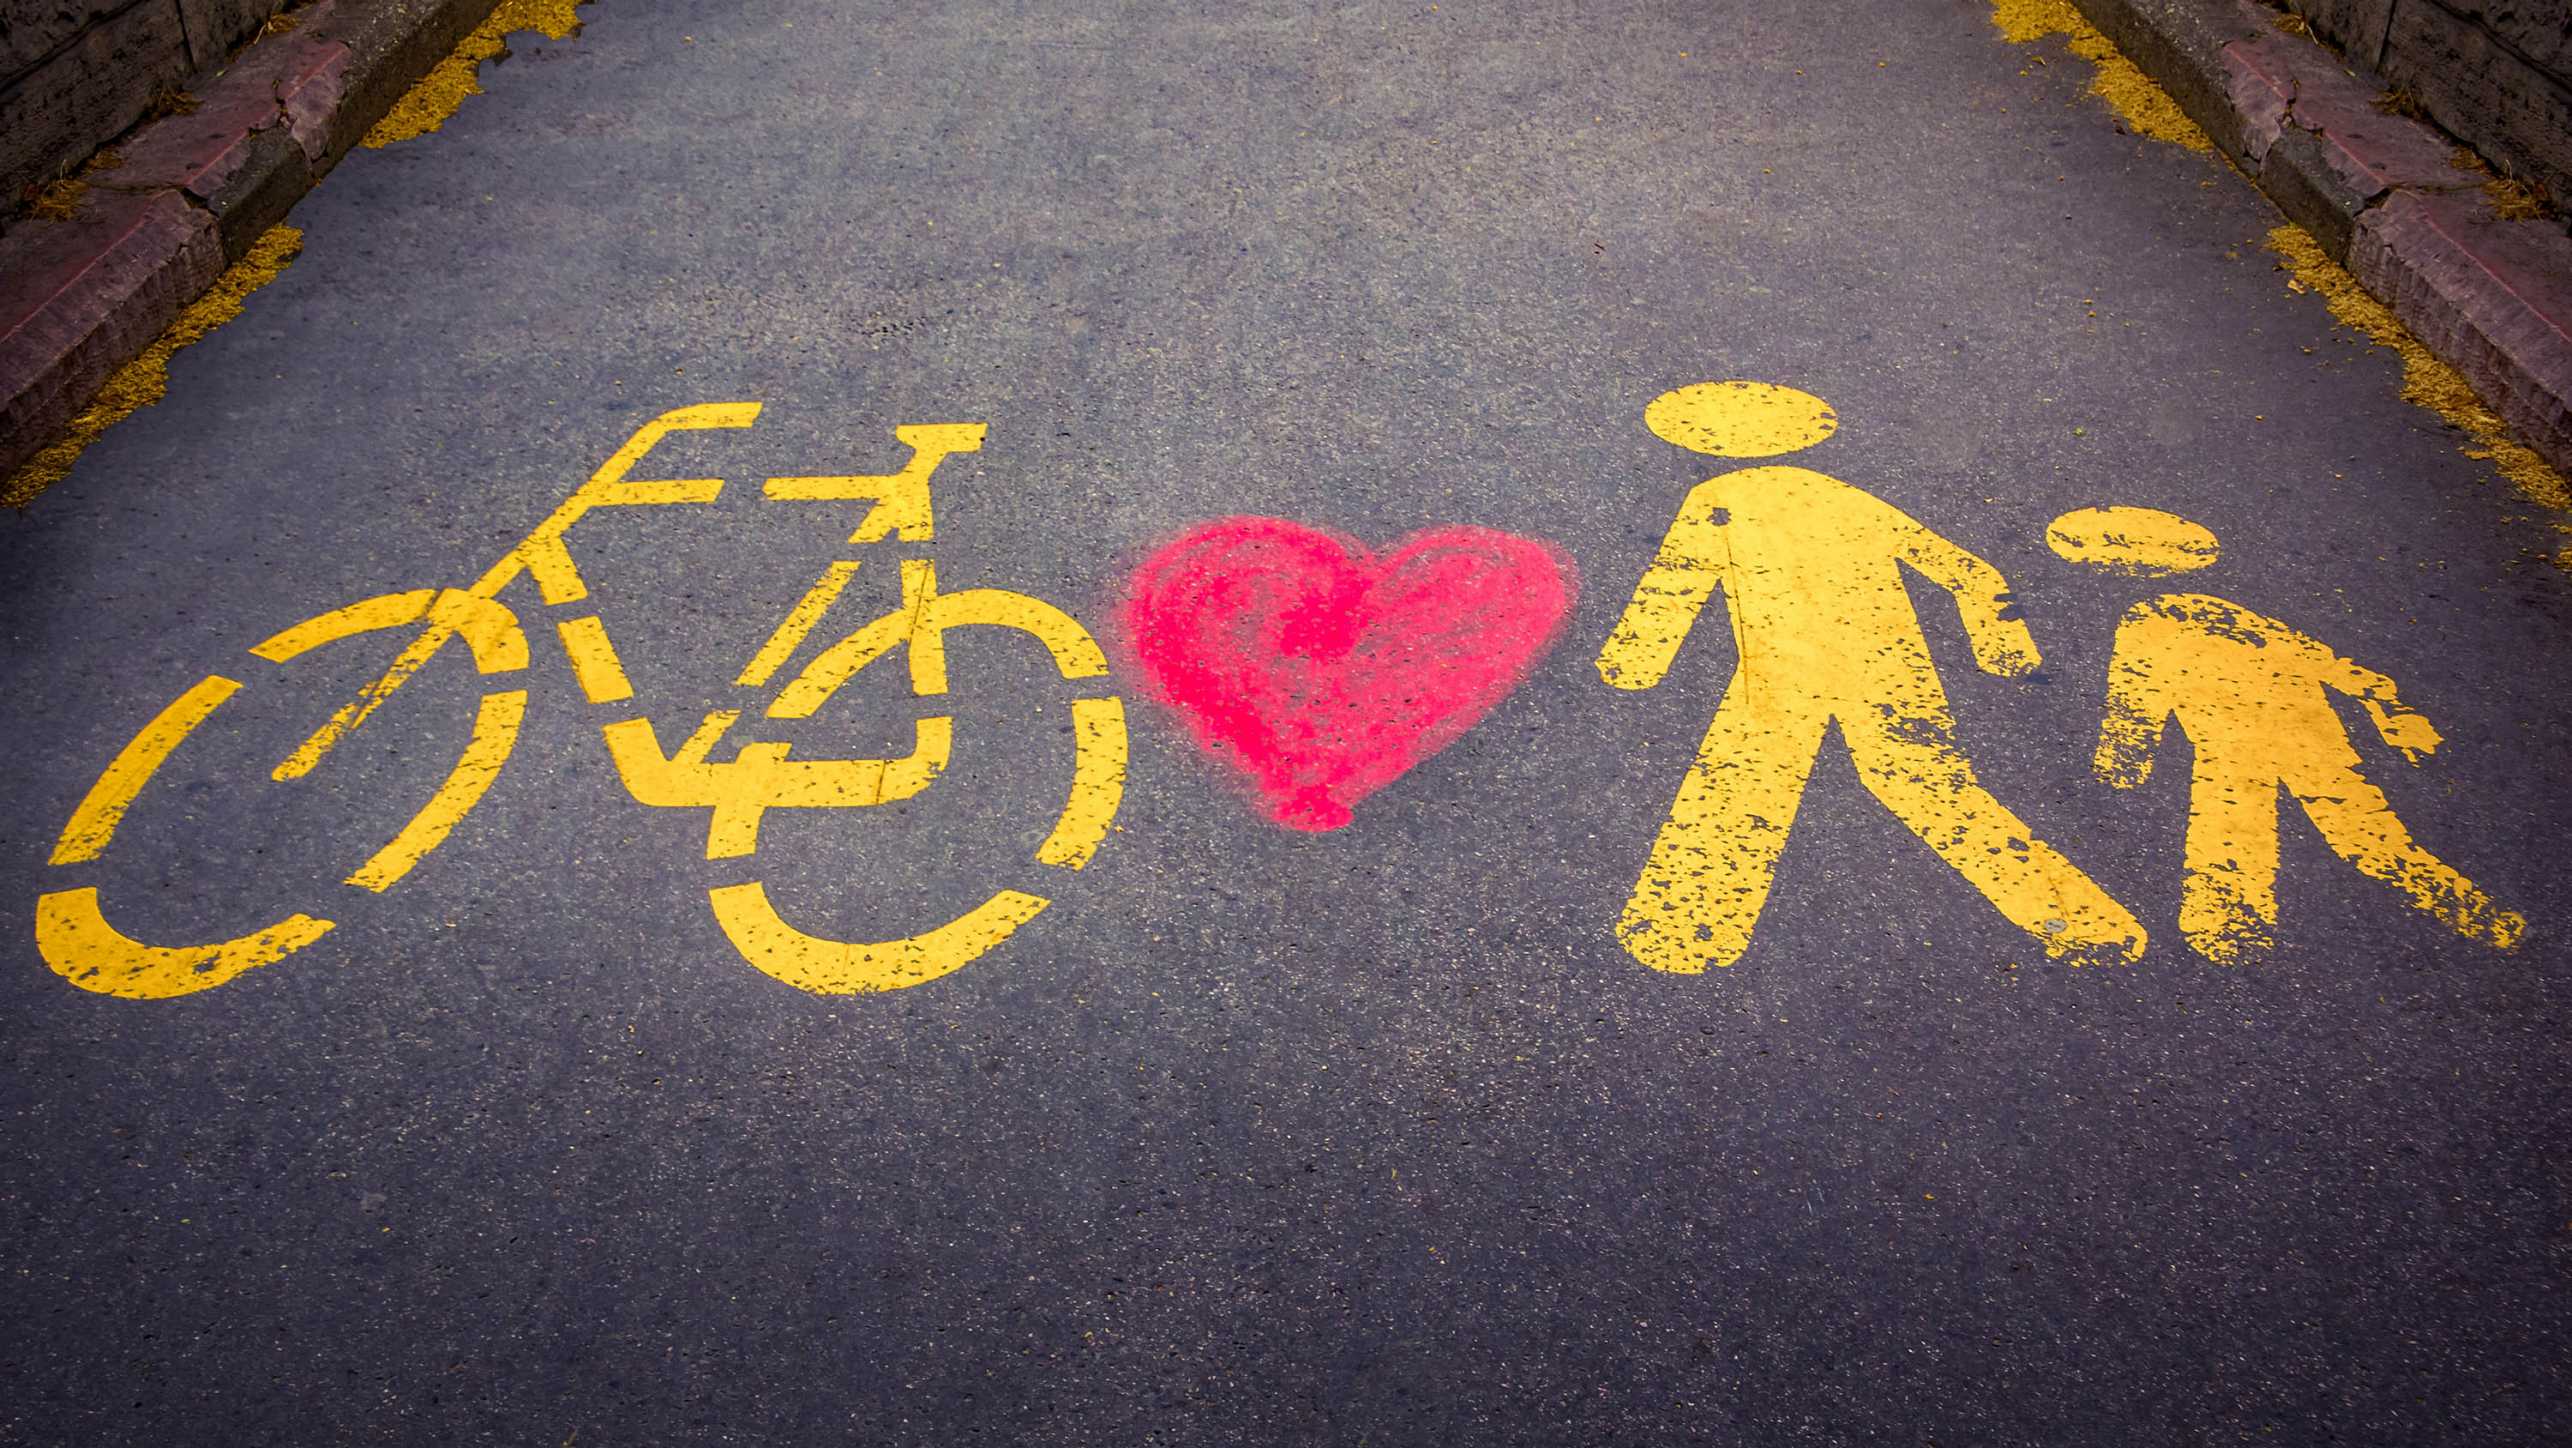 Auf einem gepflasterten Weg sind die Piktogramme von einem Fahrrad und zwei Personen in gelber Farbe und einem roten Herz zwischen Fahrrad und Personen gesprayt.